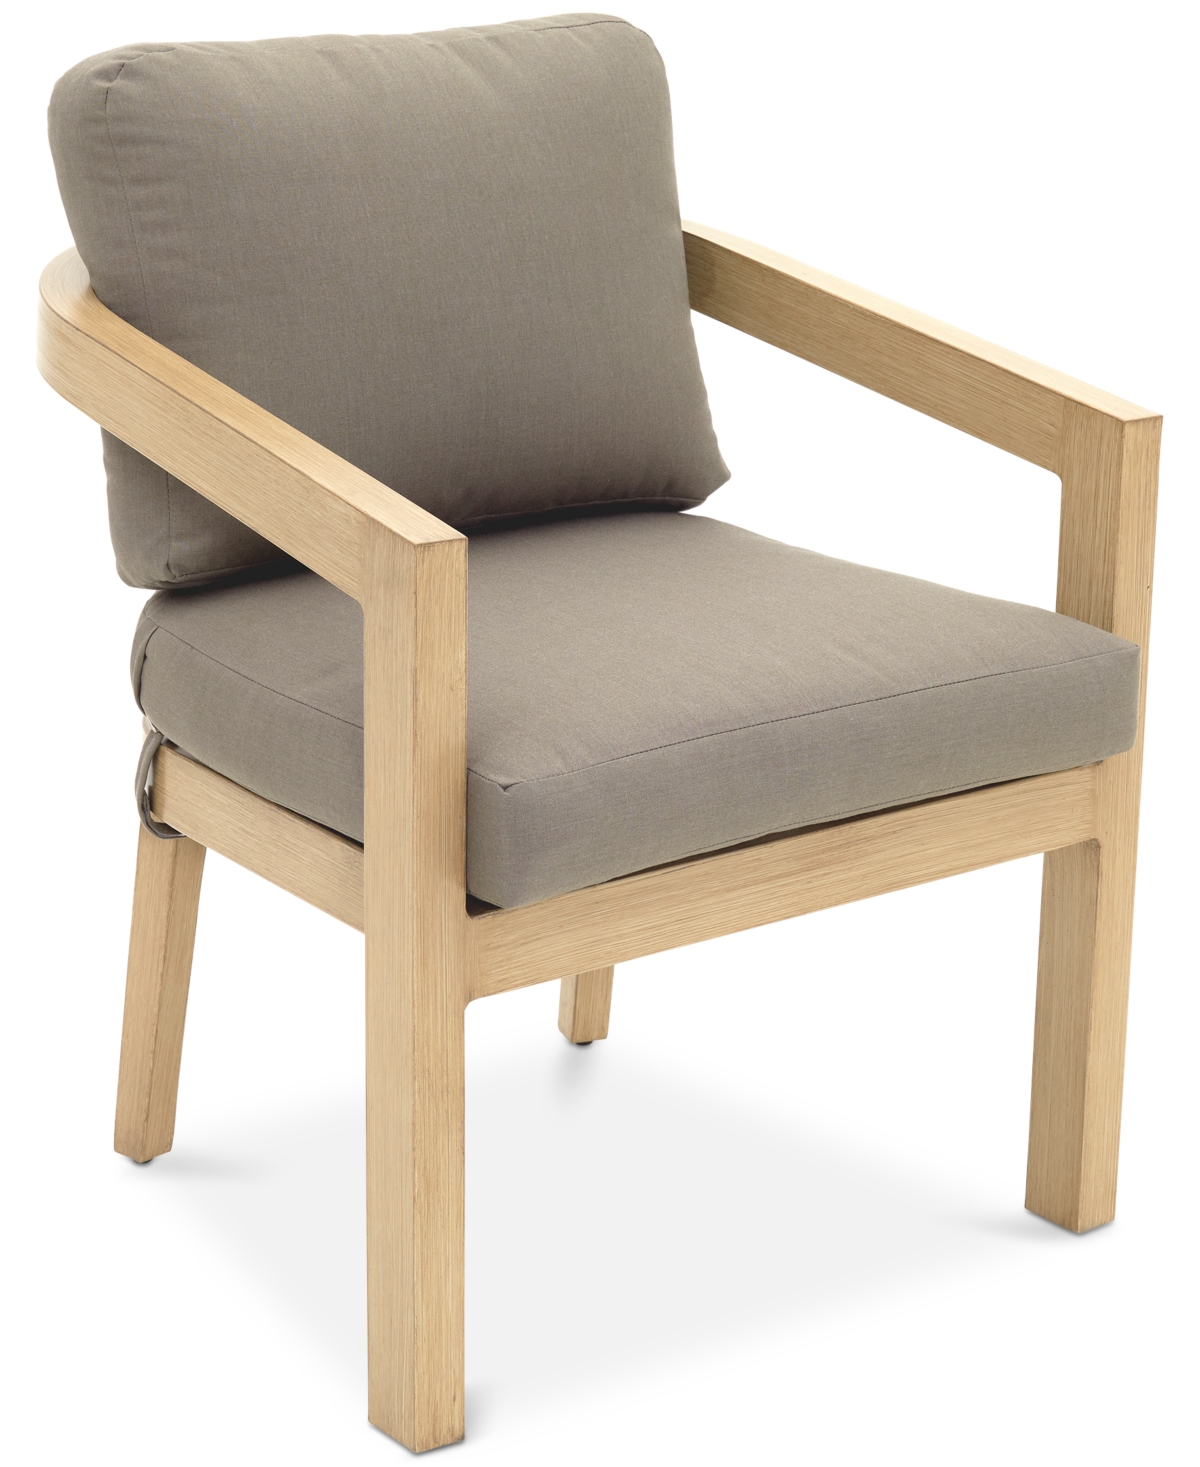 Shop Agio Reid Outdoor Dining Chair, Created For Macy's In Solartex Bark